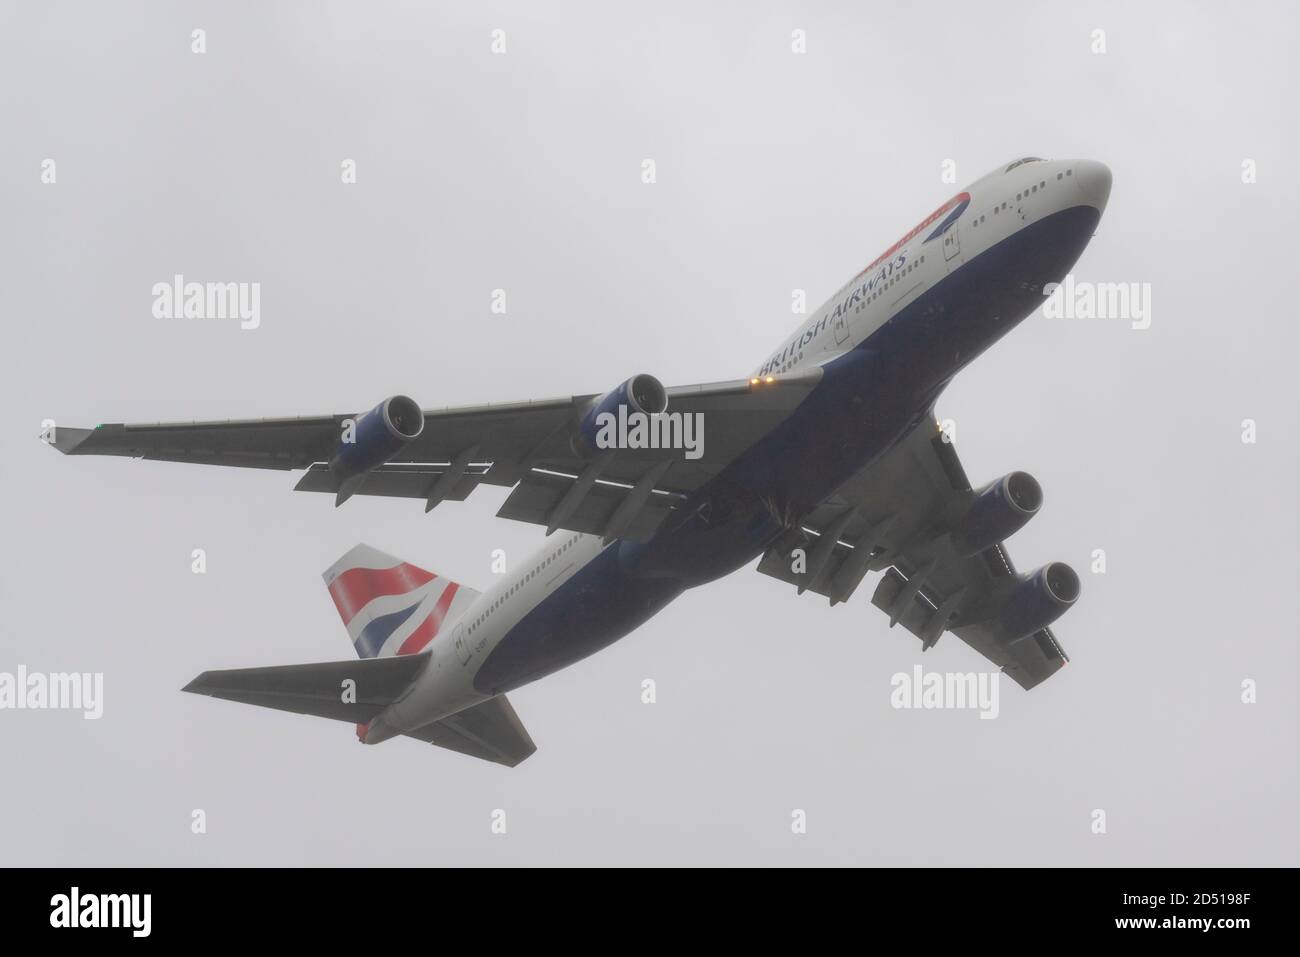 Giornata di addio per British Airways Boeing 747 aerei Jumbo Jet Airliner dopo la crisi del viaggio COVID-19. G-CIVY decollo in cattive condizioni atmosferiche per la rottamazione Foto Stock